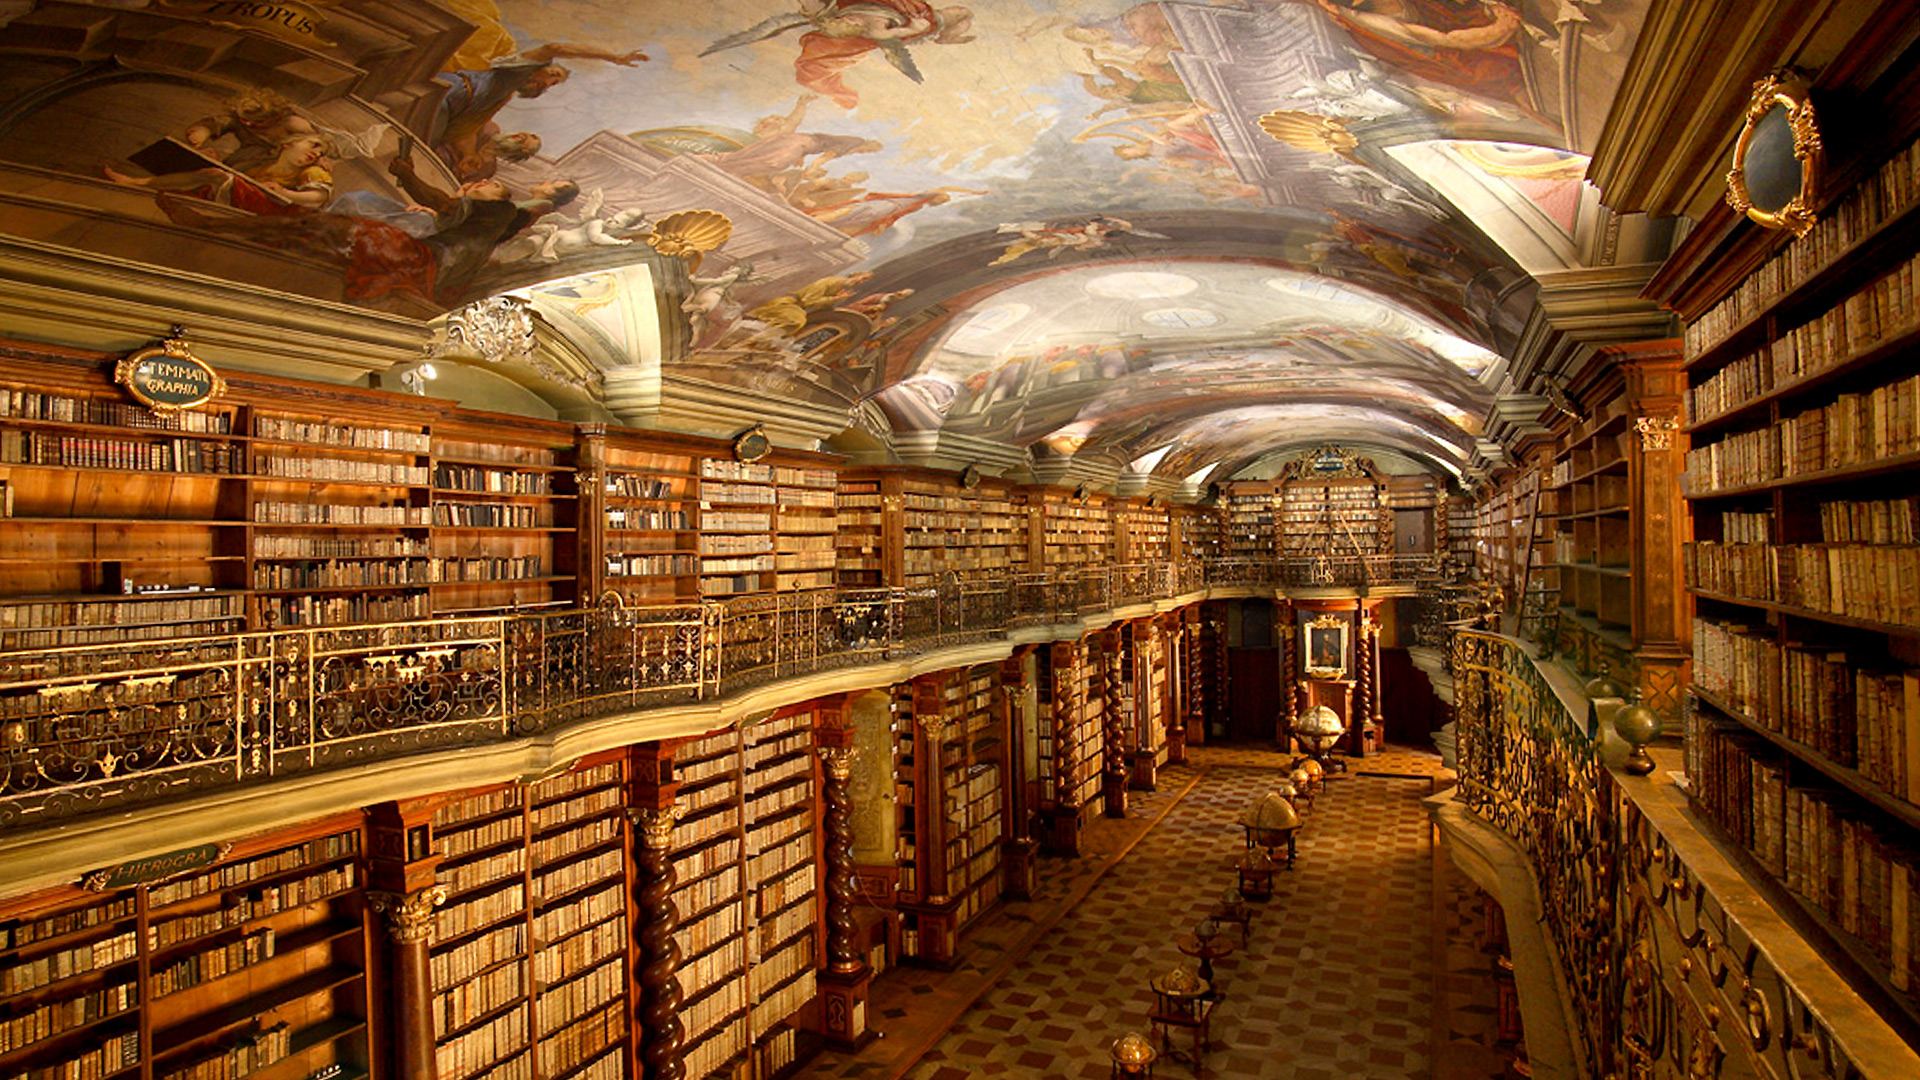 biblioteca klementinum en praga la mas bonita del mundo